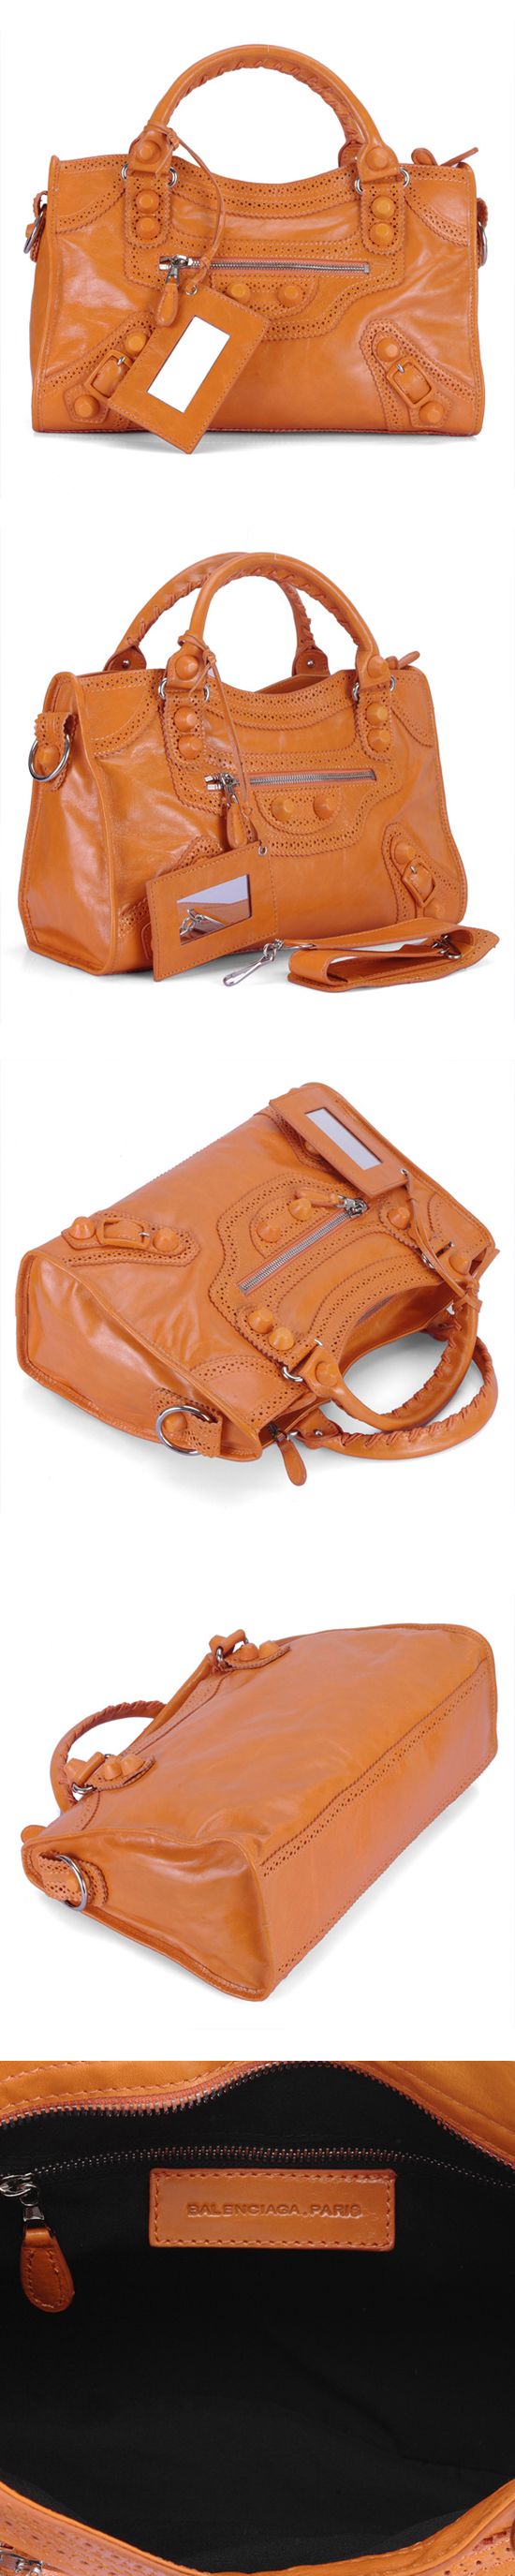 ブランド通販BALENCIAGA-バレンシアガ-332-Leather-オレンジ色激安屋-ブランドコピー